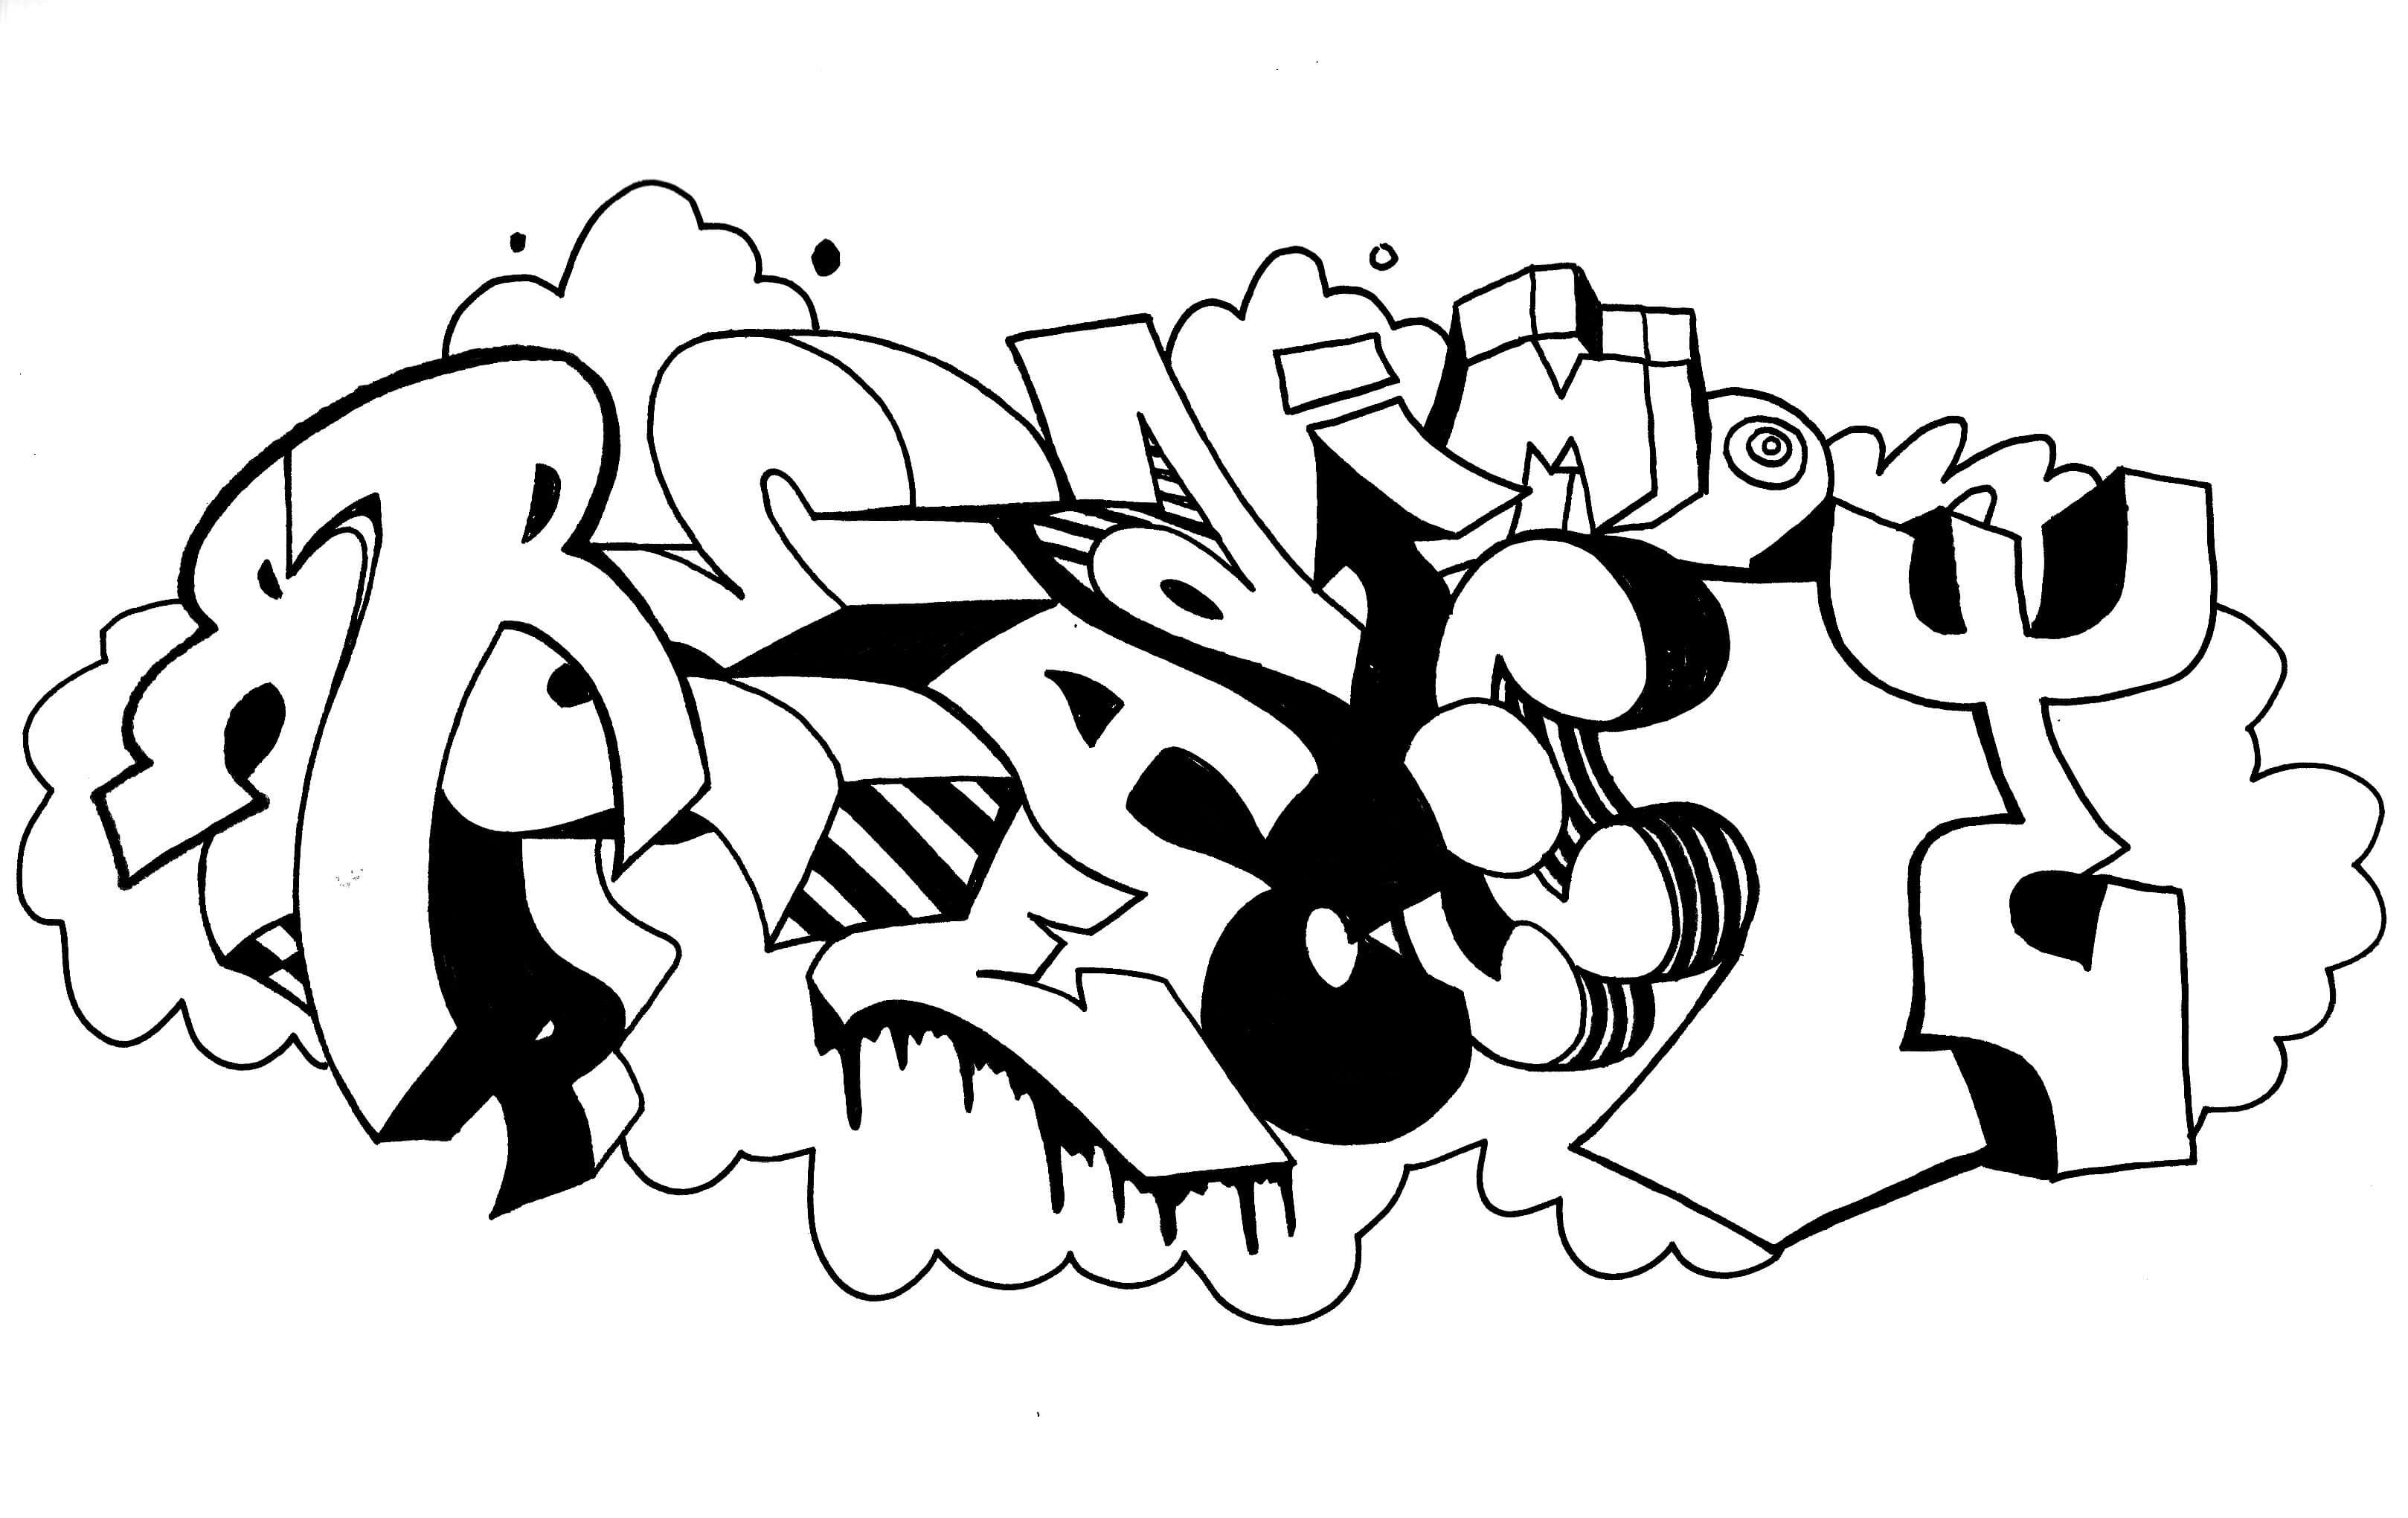 Graffiti sketch #17